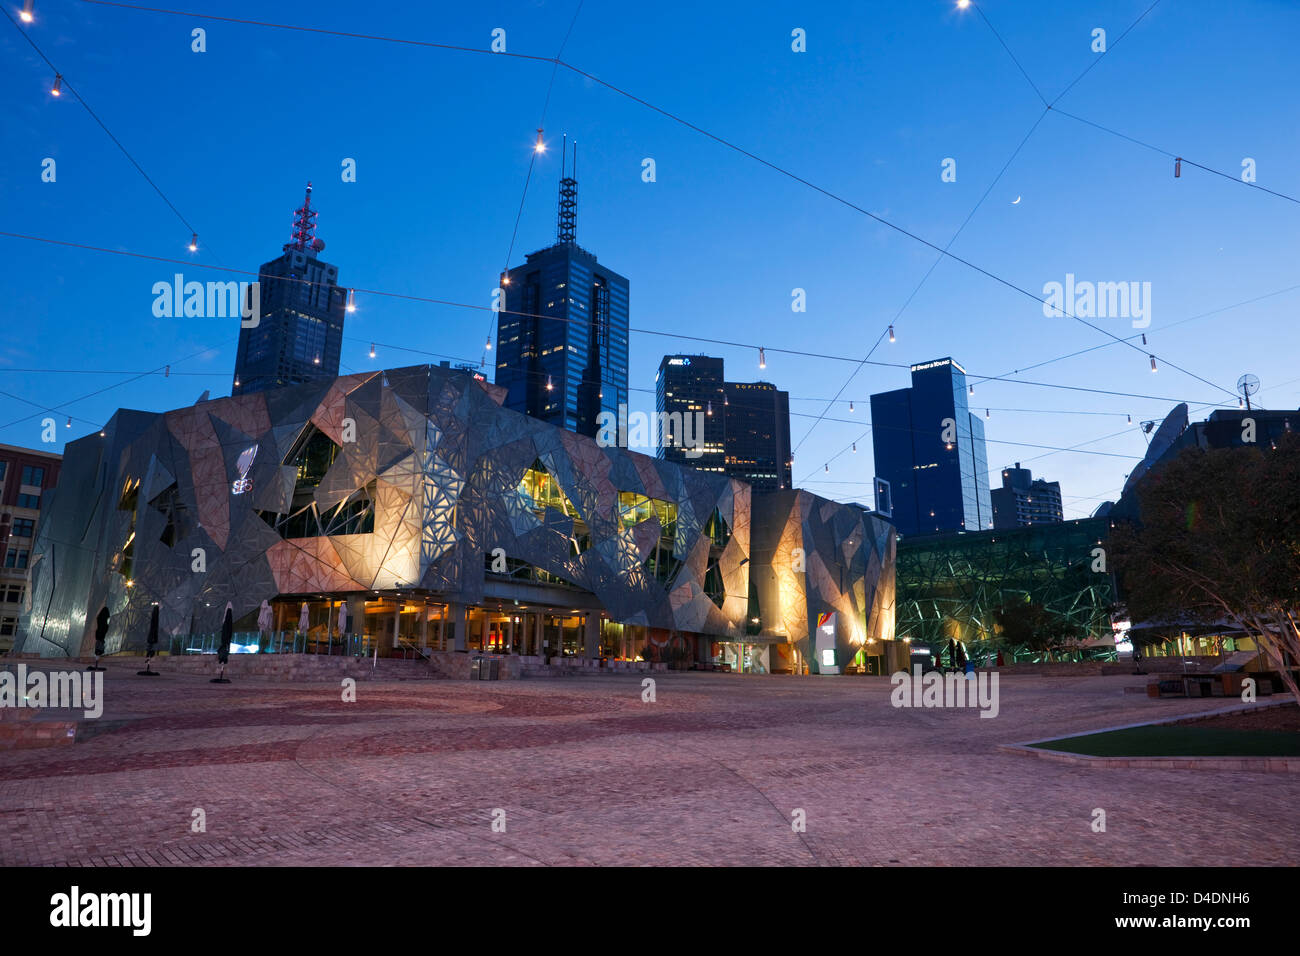 Federation Square allumé au crépuscule avec ville en arrière-plan. Melbourne, Victoria, Australie Banque D'Images